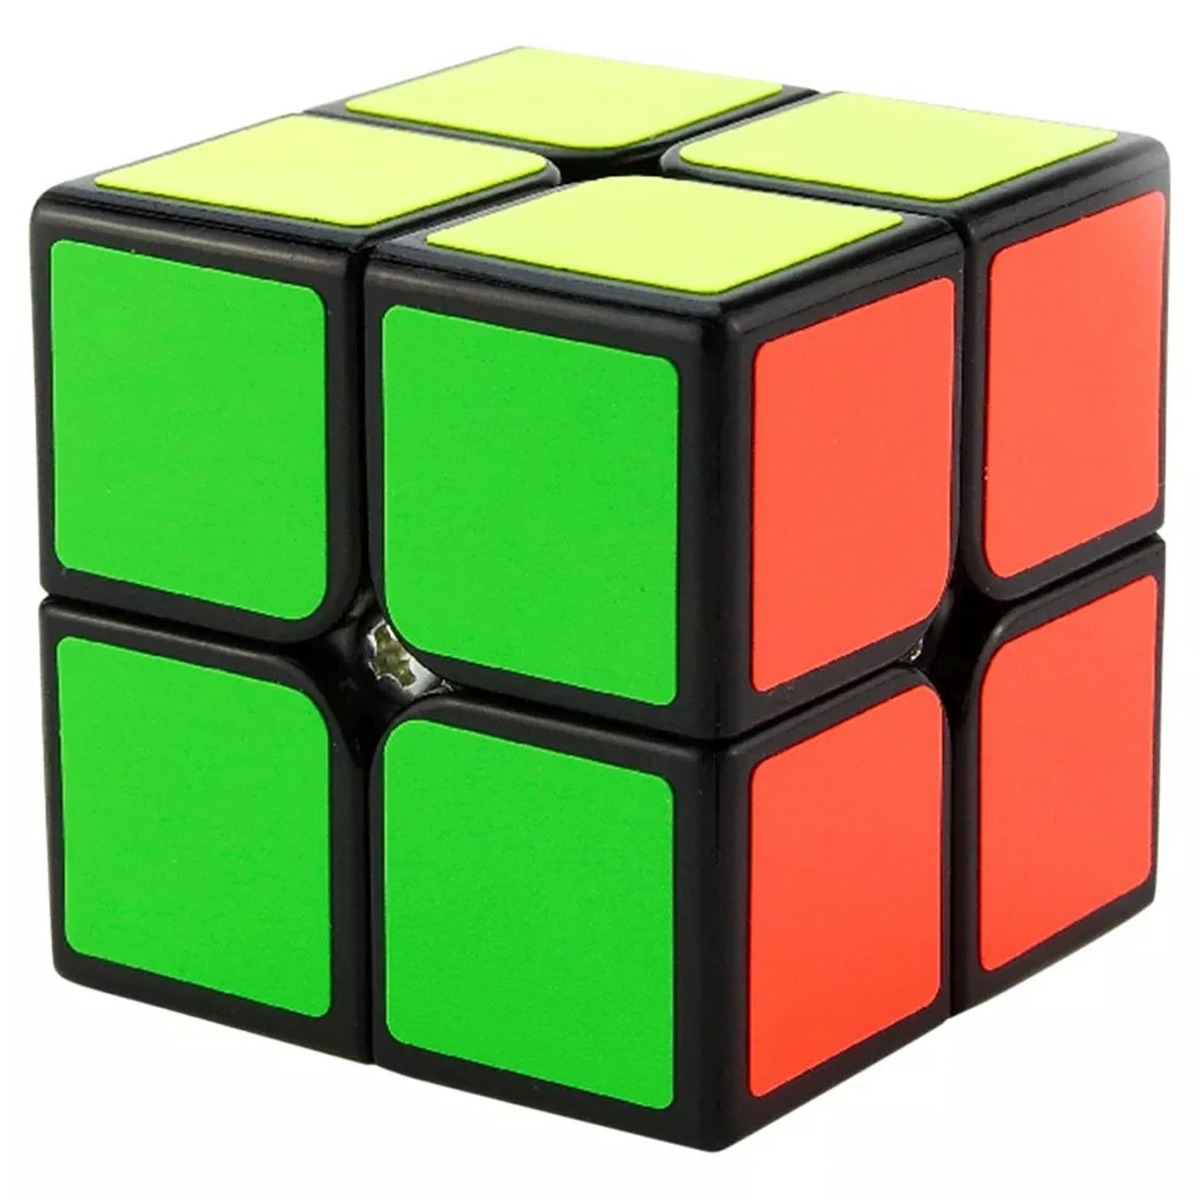 Lista 91 Foto Como Hacer El Cubo De Rubik 2x2 Para Niños Alta